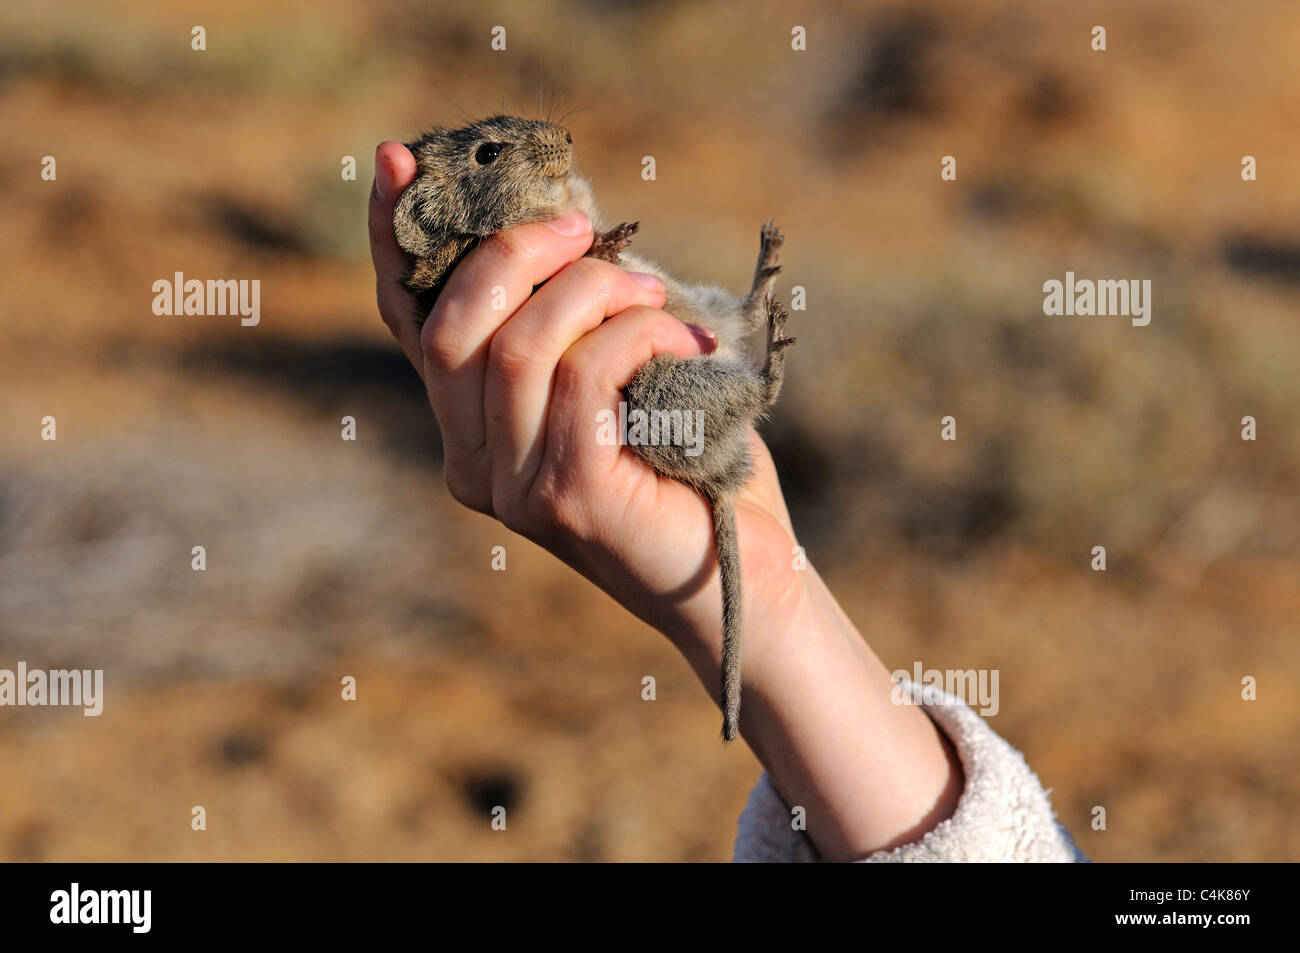 Dimostrare il modo corretto di tenere un catturato Four-Striped erba (Mouse Rhabdomys pumilio) per le indagini scientifiche, Foto Stock